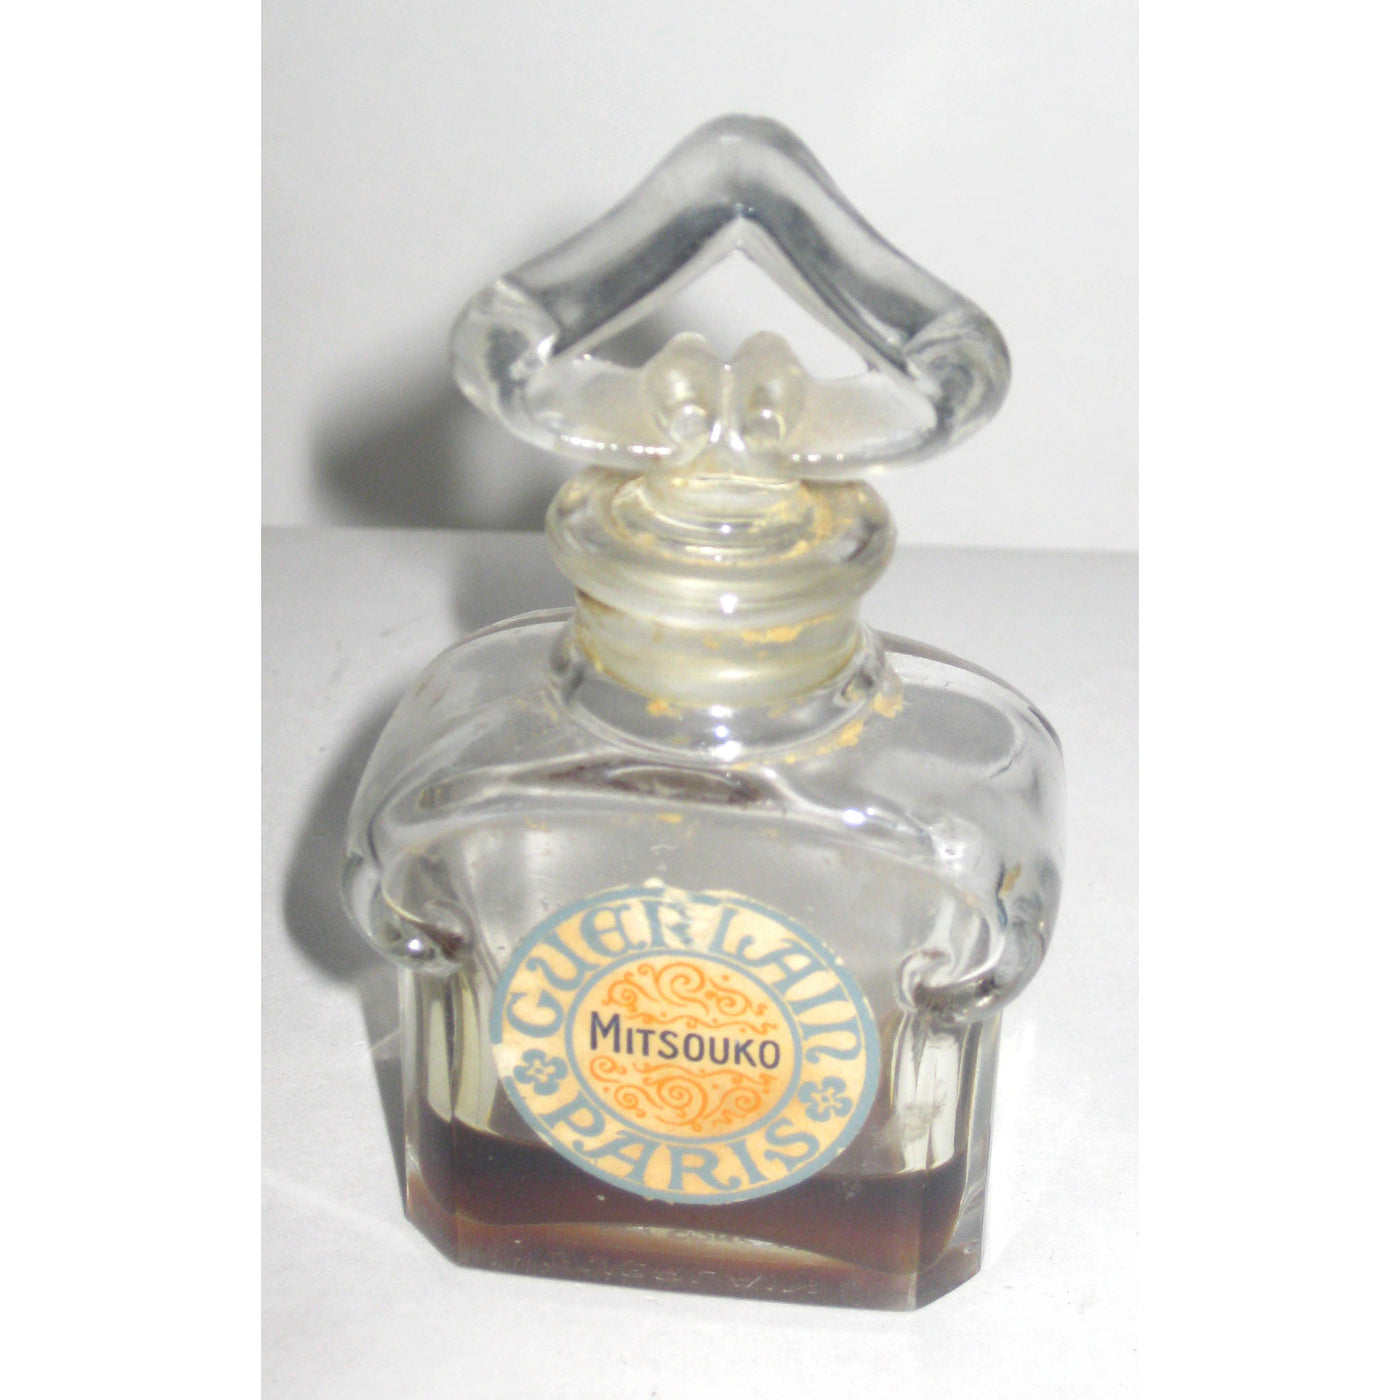 Vintage Guerlain Mitsouko Perfume